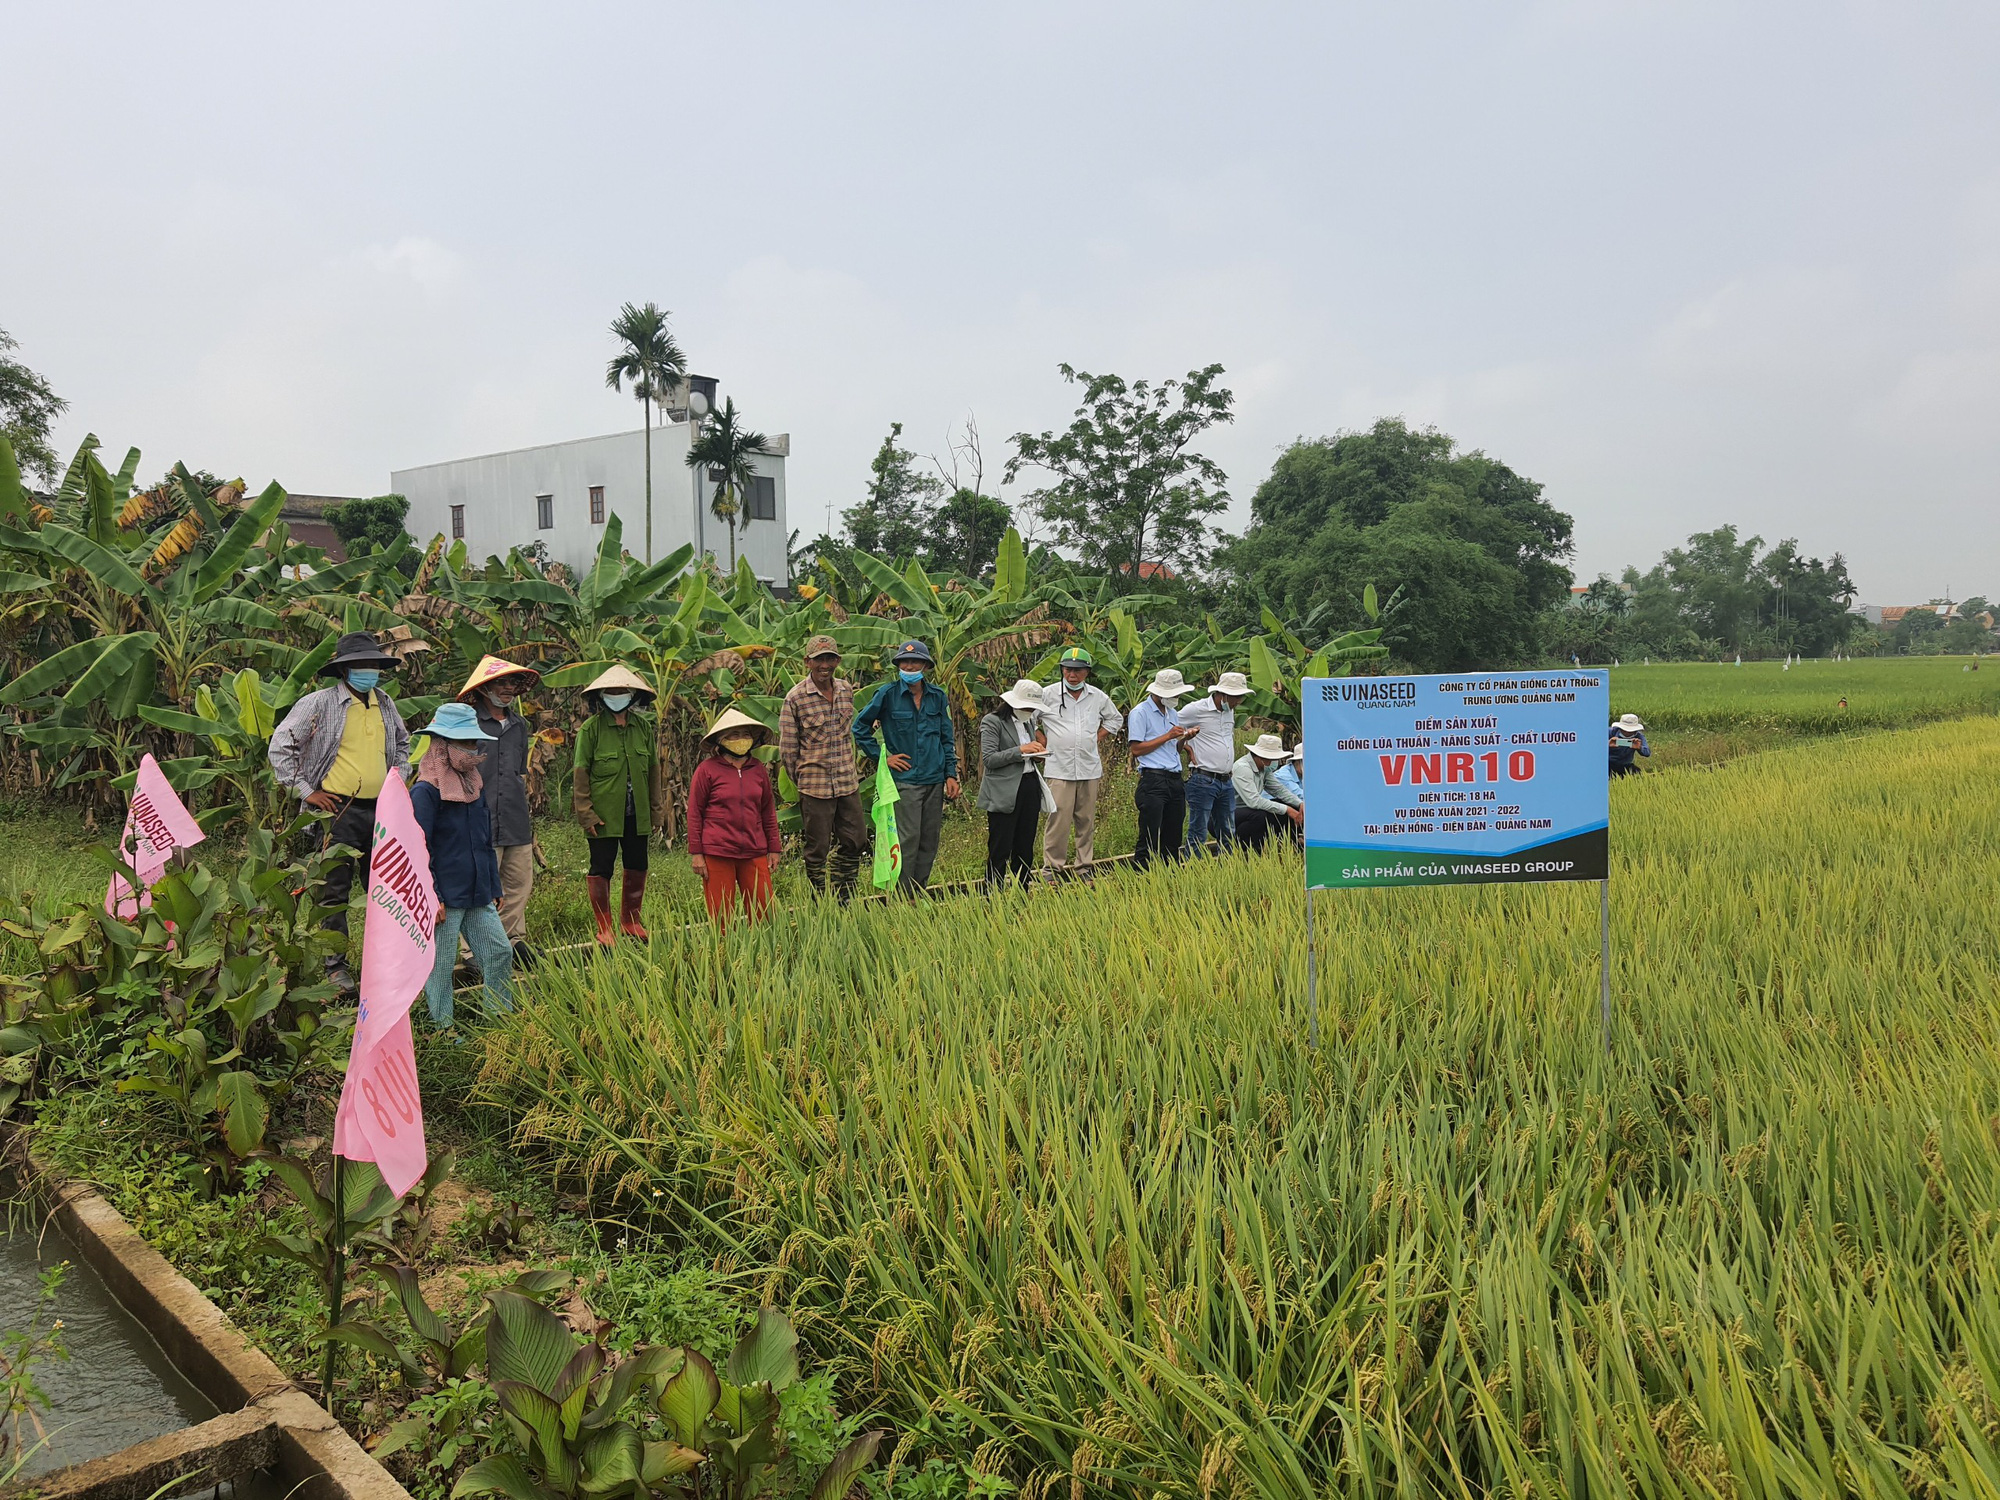 Nông dân: Nông dân là những người vất vả và cần được tôn trọng. Họ giữ vững nền nông nghiệp Việt Nam phát triển và cung cấp những sản phẩm tốt nhất cho người tiêu dùng. Chúng ta hãy cùng chiêm ngưỡng bức ảnh liên quan đến nông dân để ghi nhận công sức và cống hiến to lớn của họ.